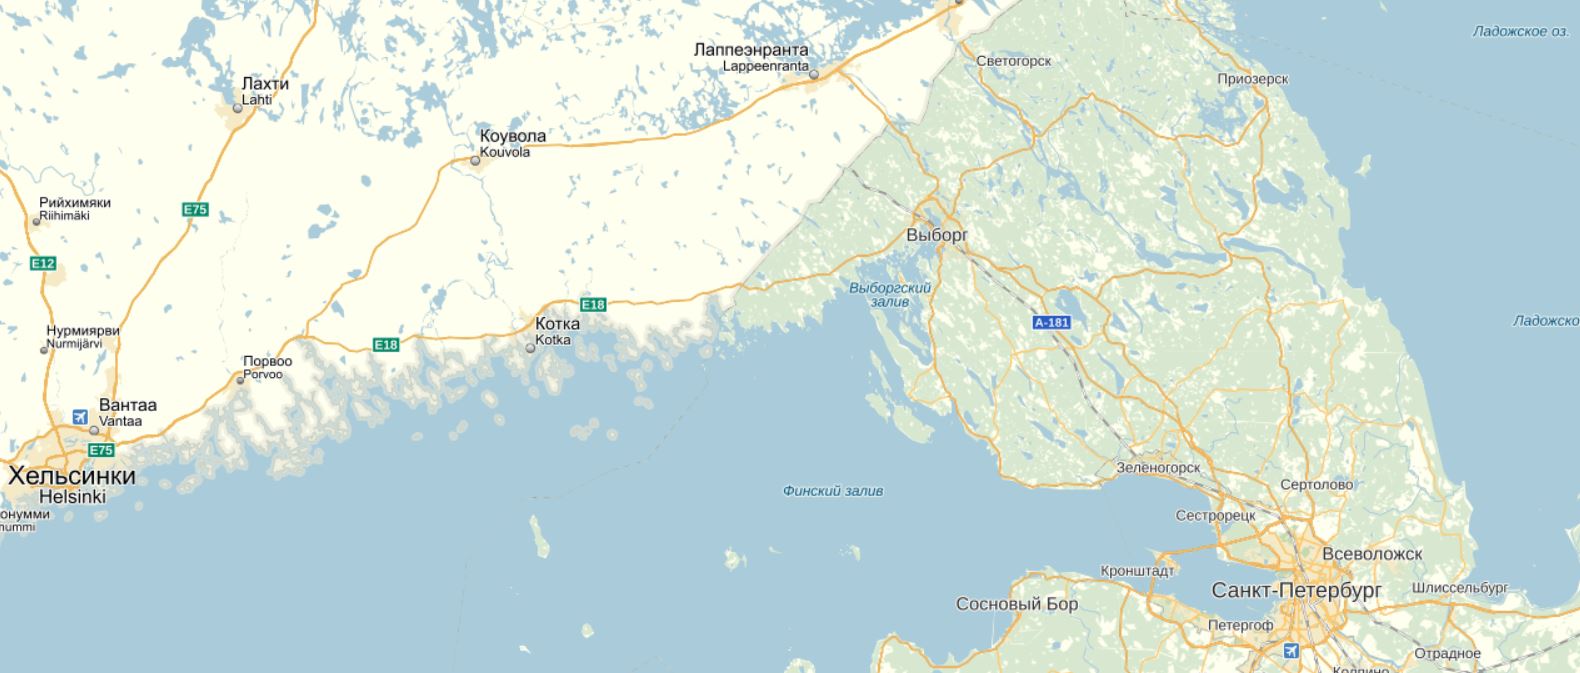 Карта побережья финского залива Ленинградской области